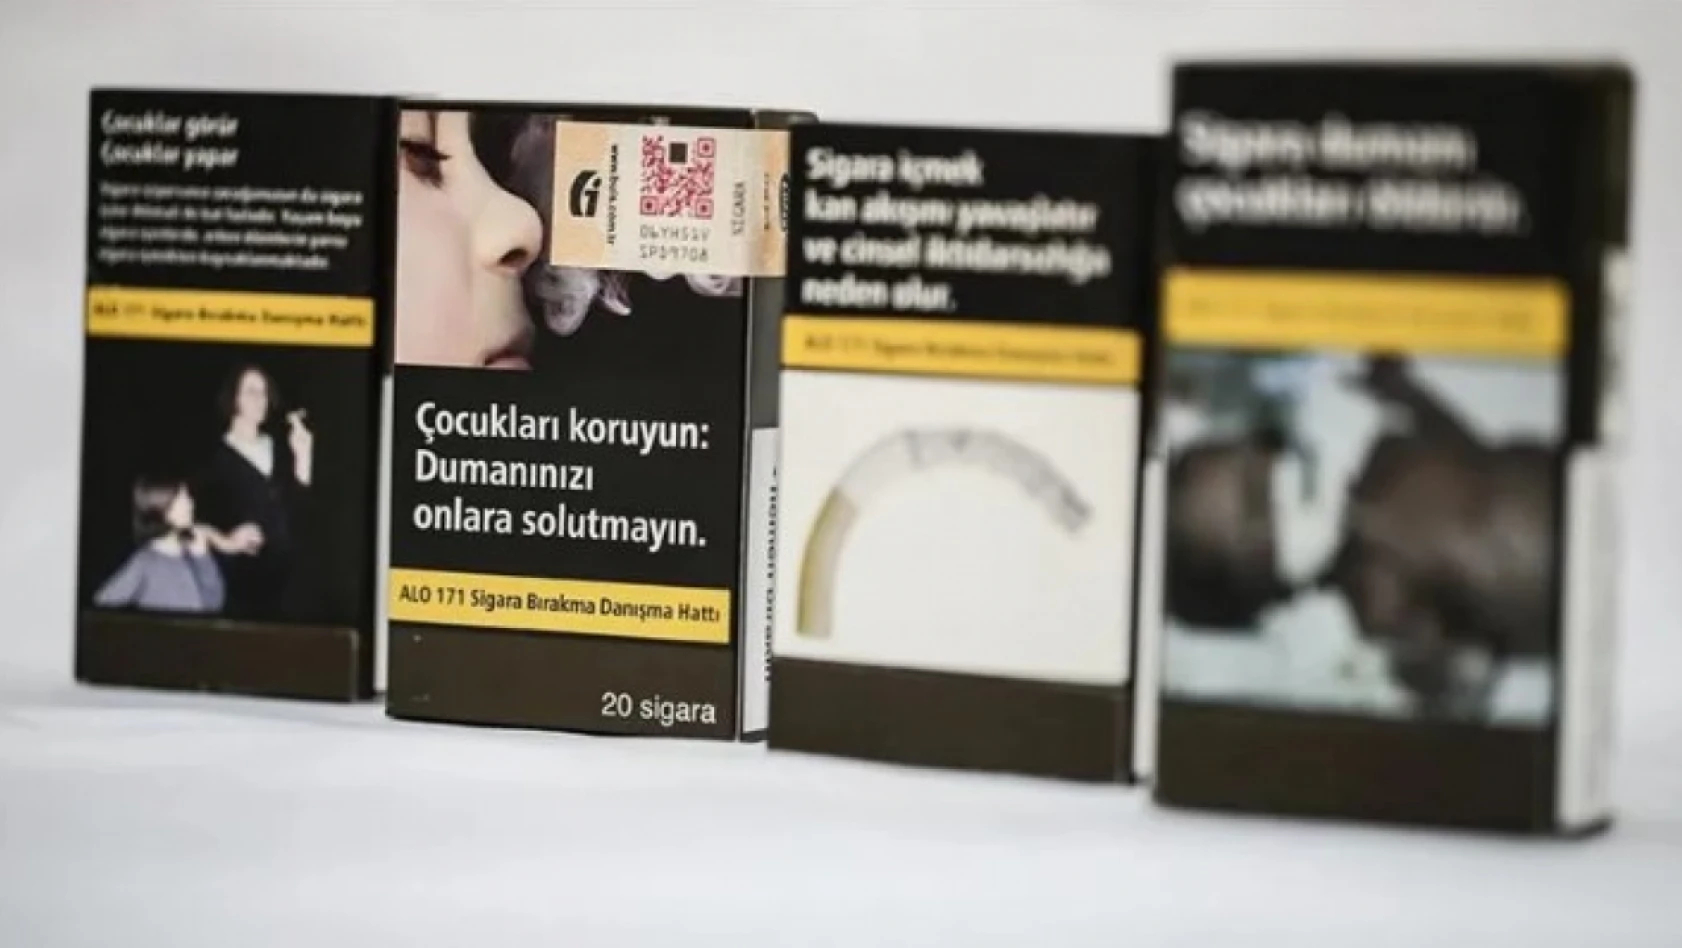 Sigara Paketleri Değişiyor – Artık Zorunlu Olacak!